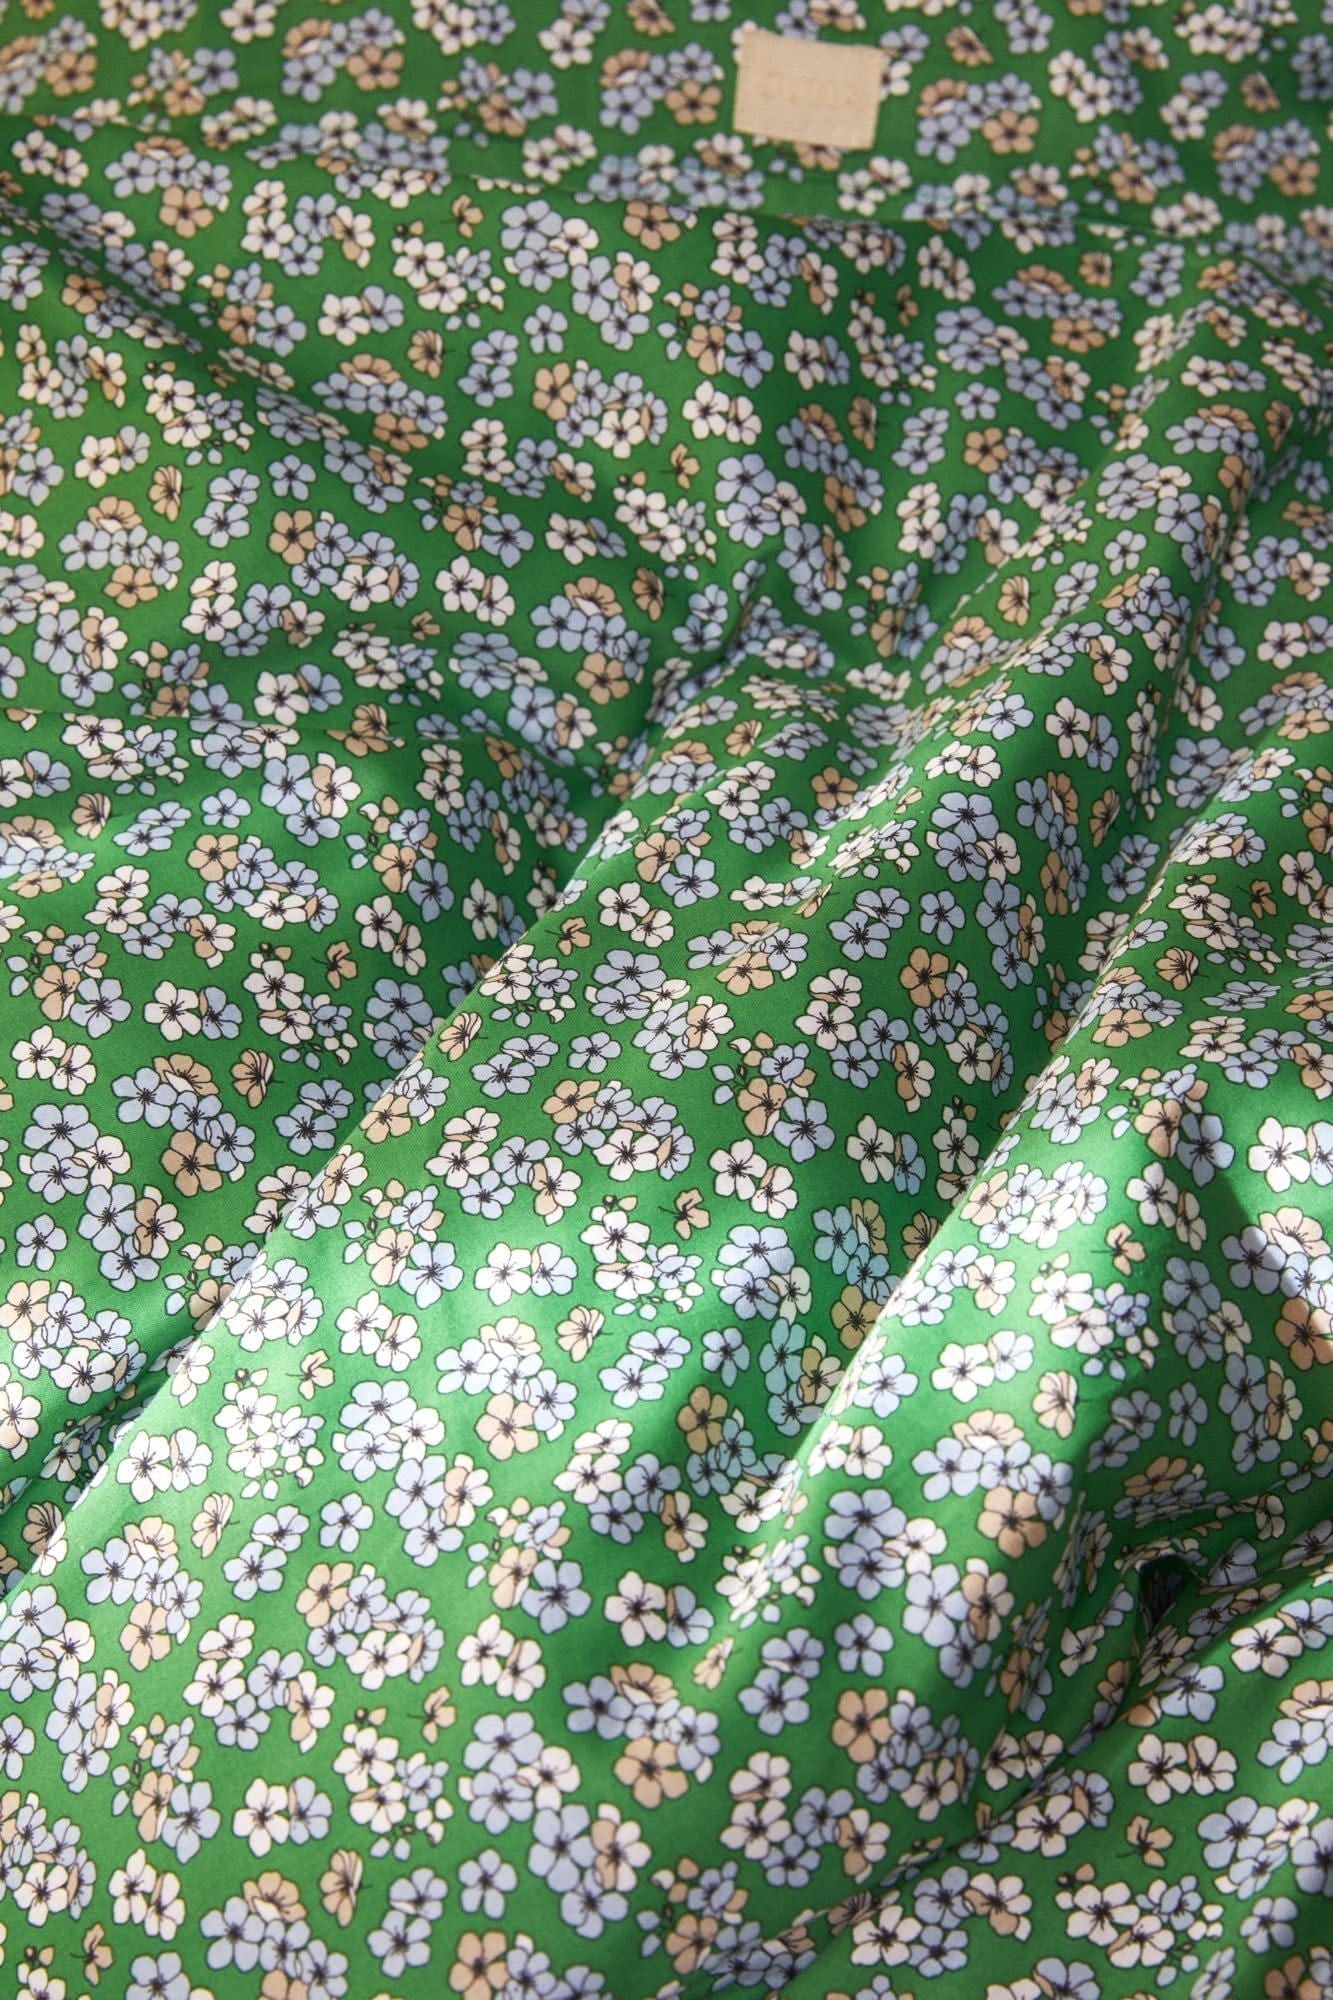 Juna przyjemnie poduszka 63x60 cm, zielony